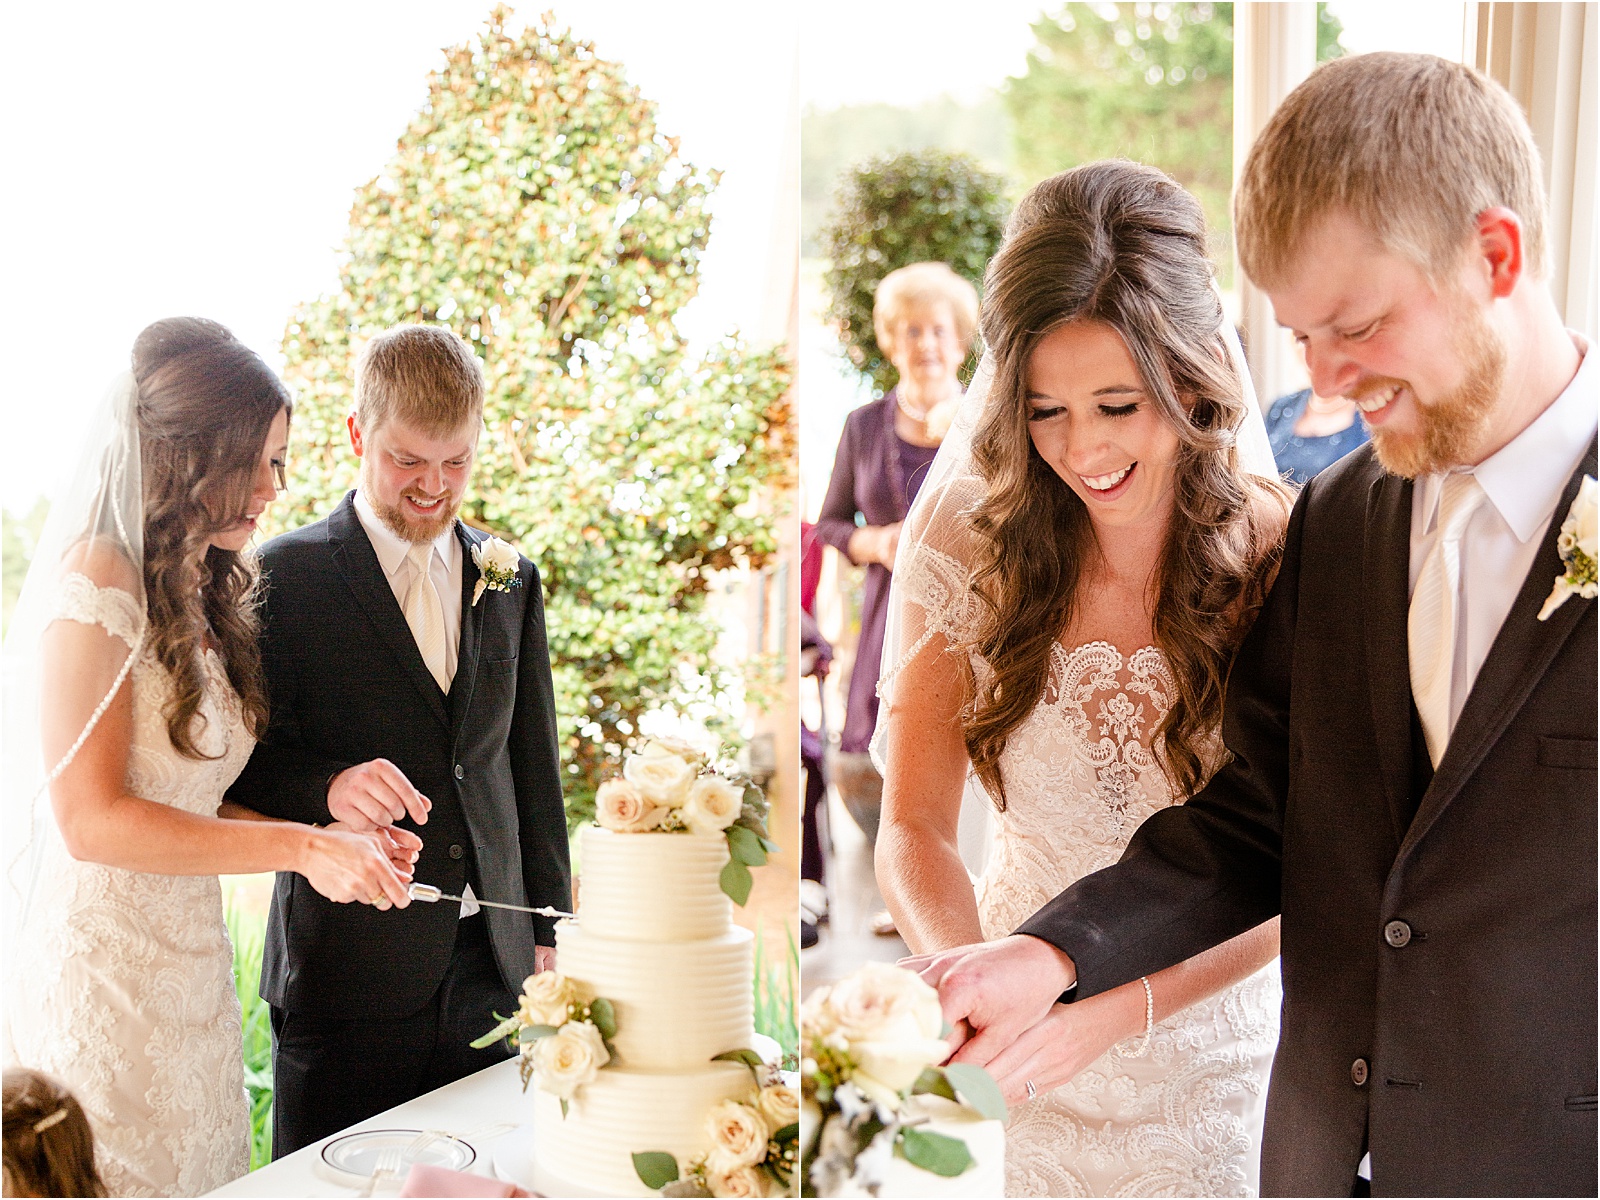 Couple cutting wedding cake in GA